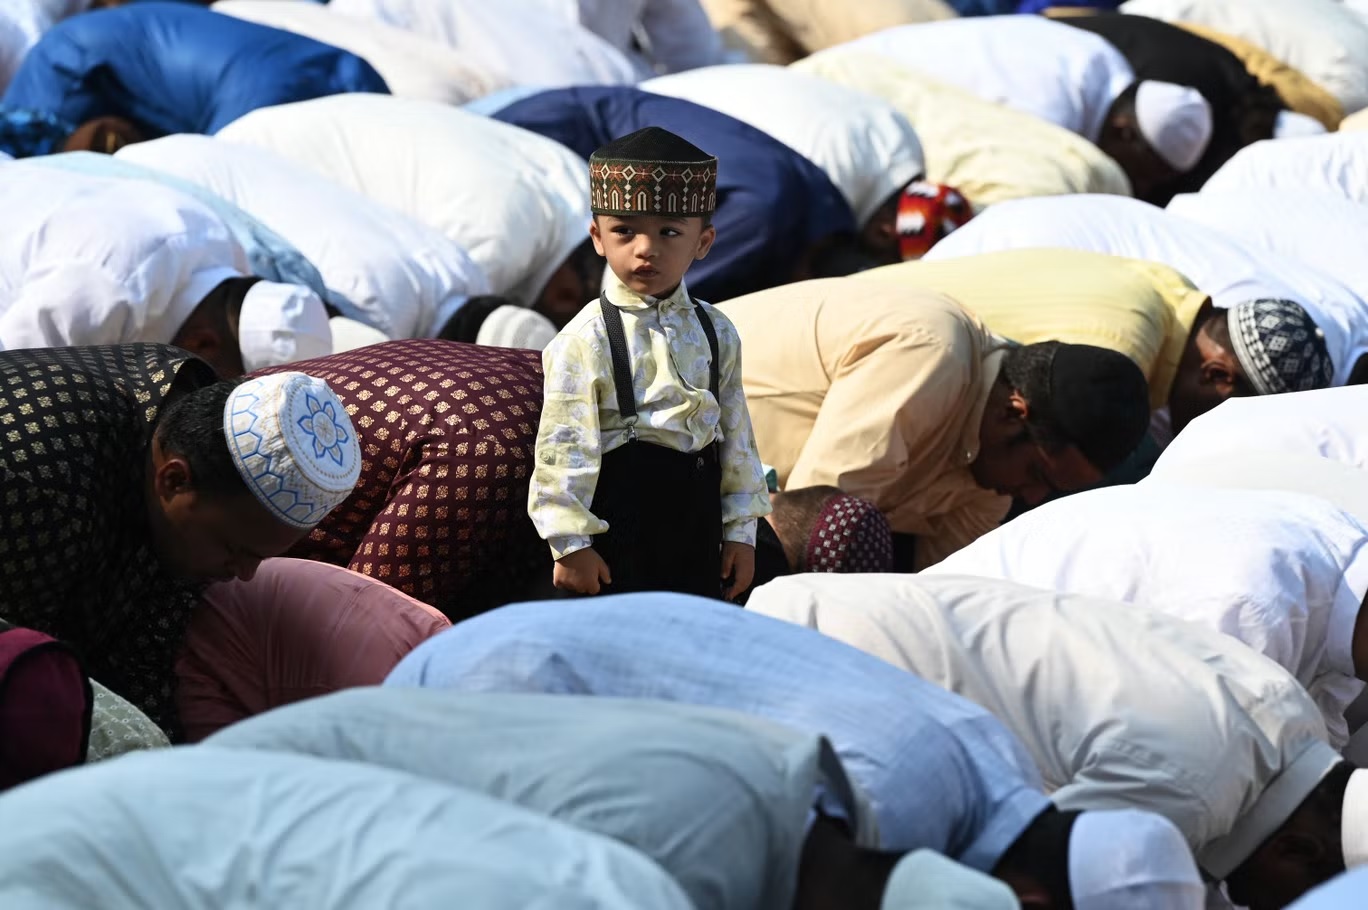 صبي يقف وسط جمع من المصلين المسلمين خلال صلاة عيد الفطر، قبل انطلاق احتفالات العيد في حيدر آباد يوم 22 أبريل (أ ف ب/ غيتي)